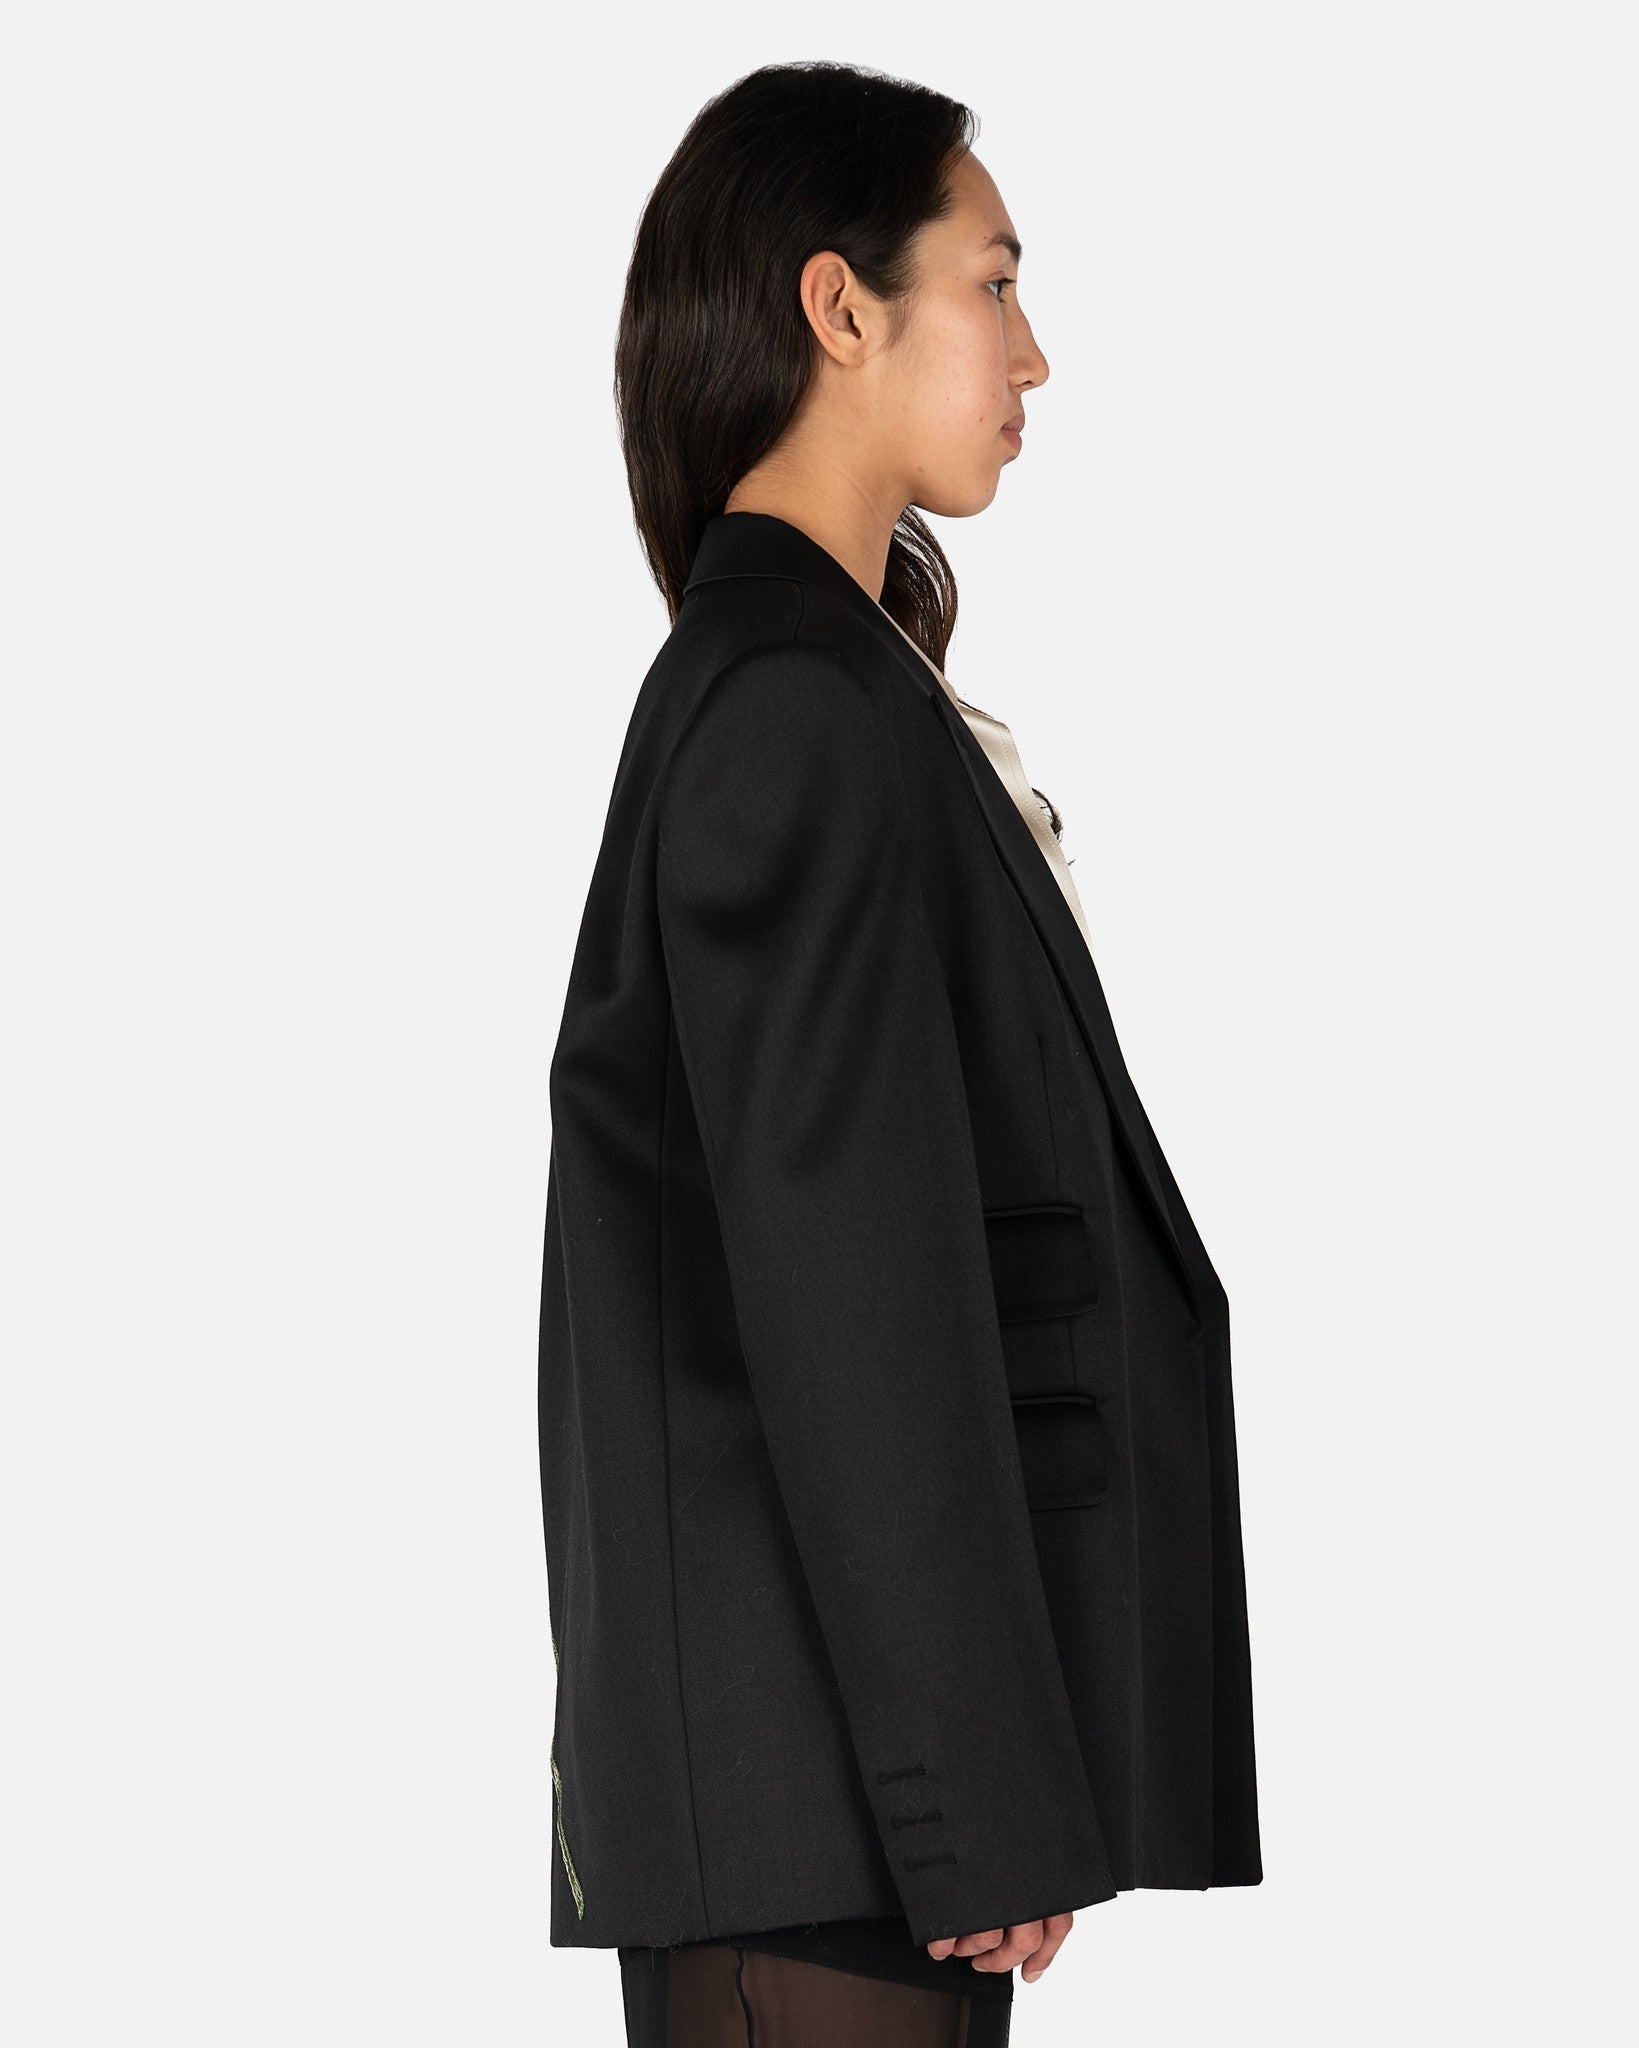 Floral Tuxedo Oversized Blazer in Black/White – SVRN